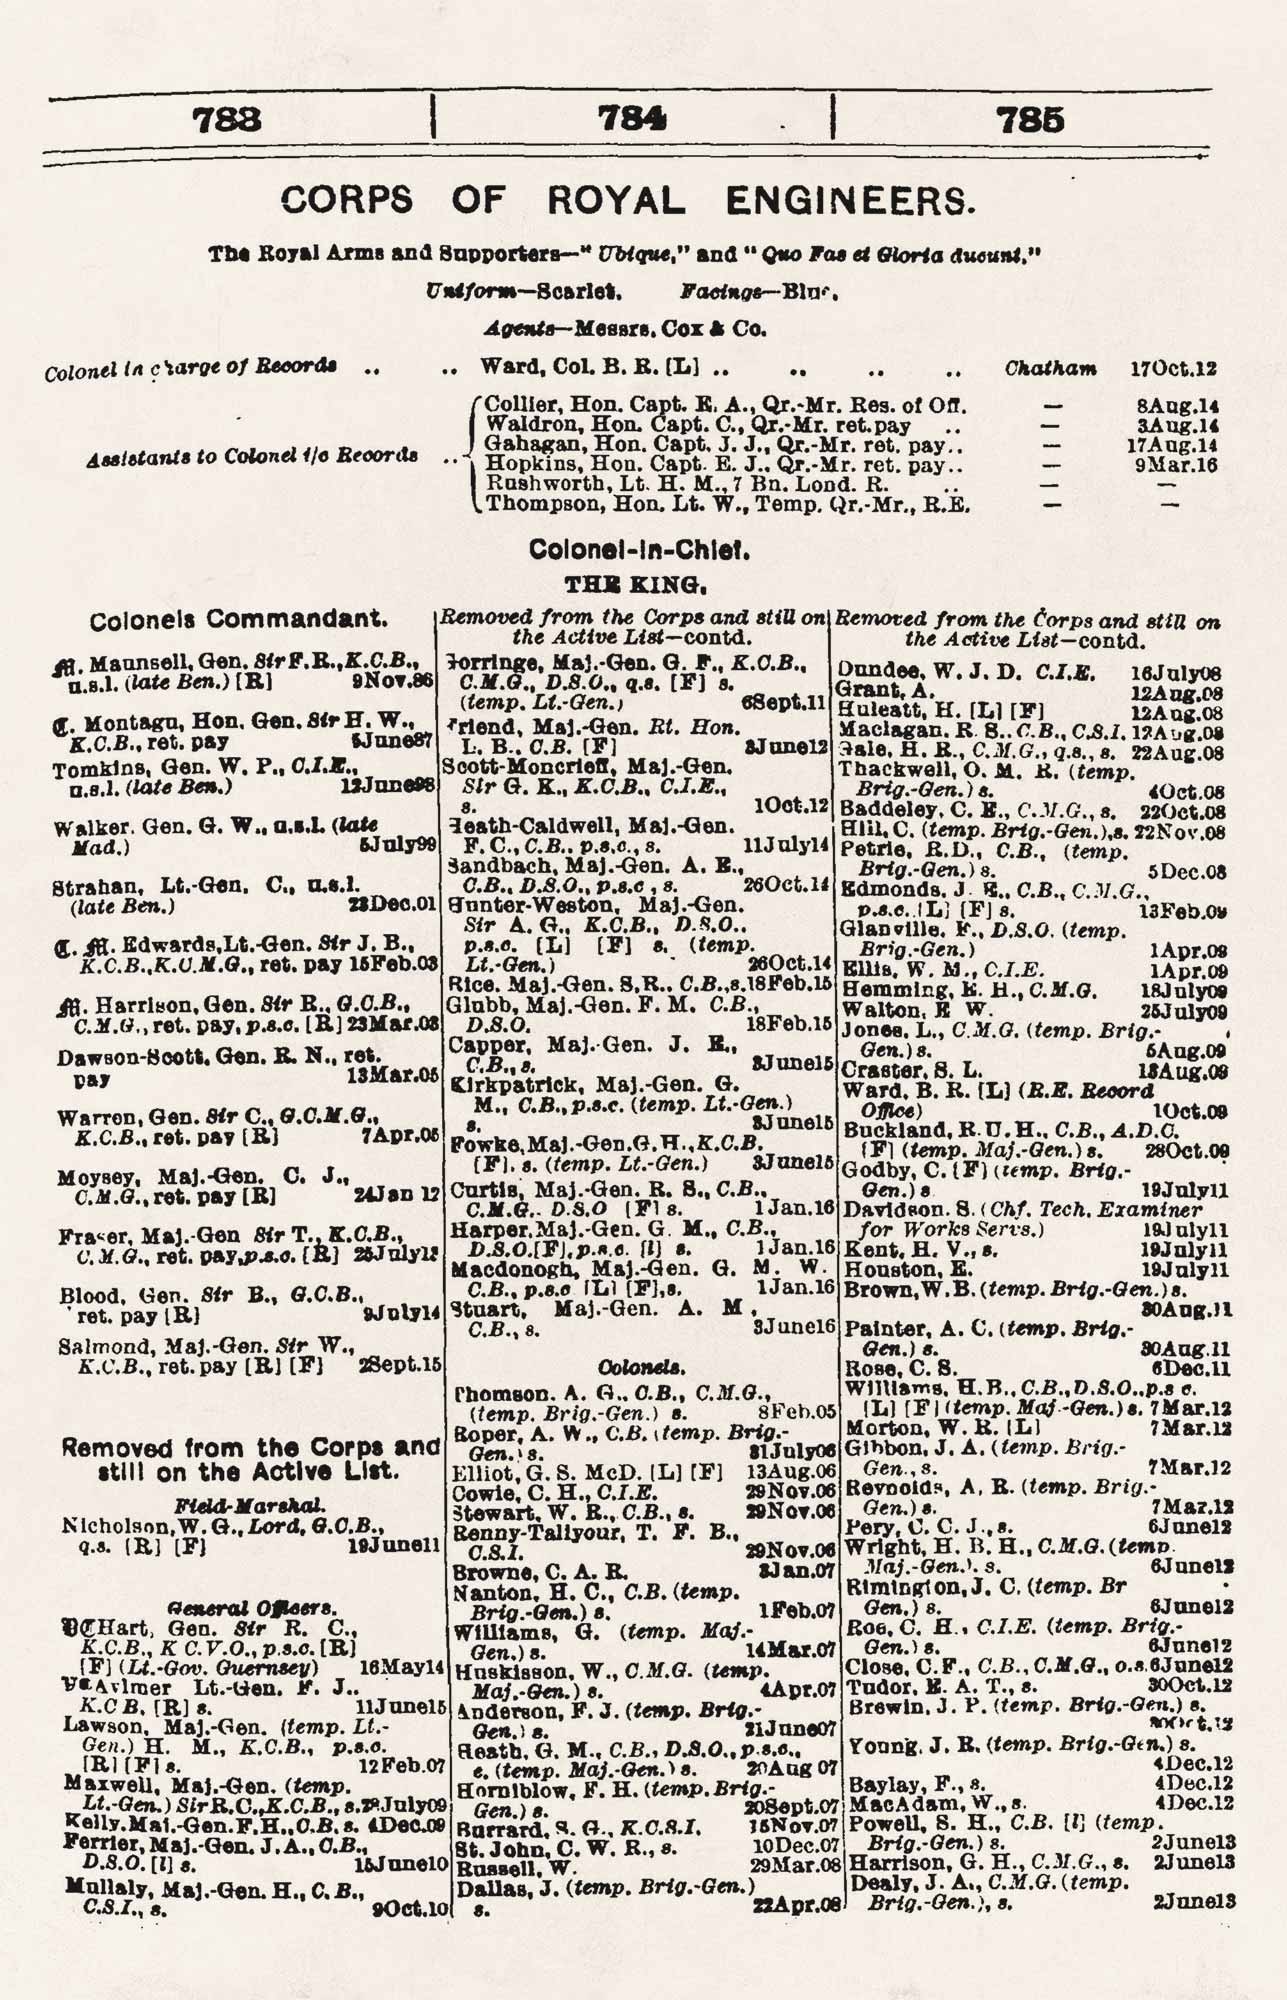 1916 Army List